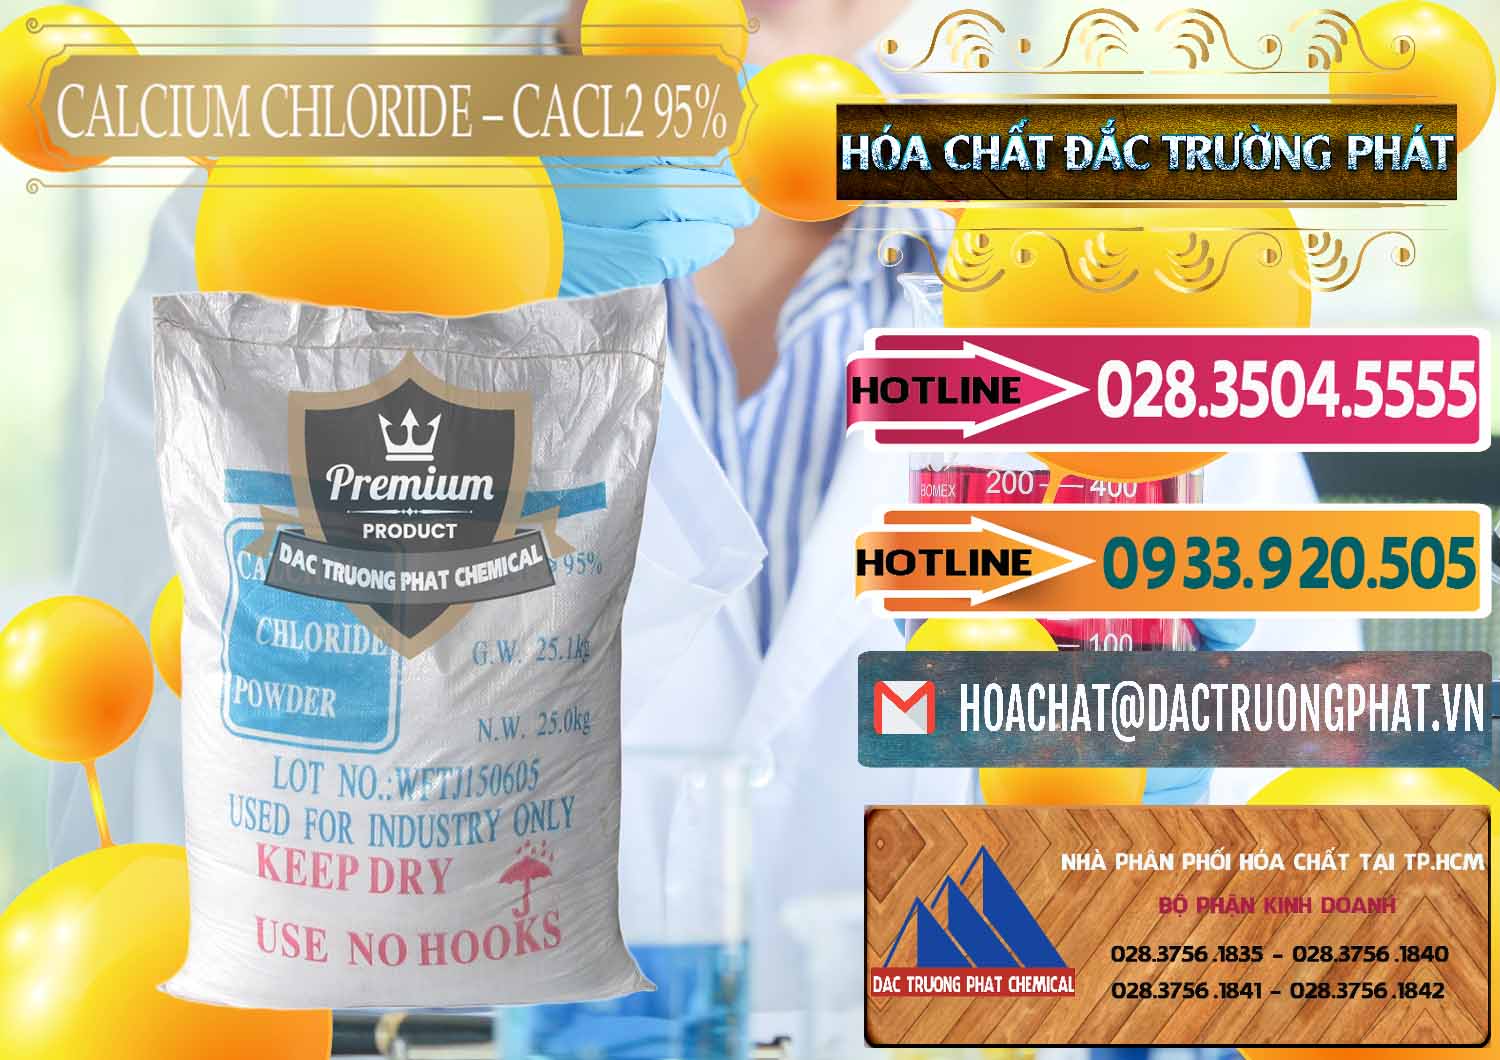 Đơn vị chuyên kinh doanh & bán CaCl2 – Canxi Clorua 95% Trung Quốc China - 0039 - Cty chuyên phân phối và bán hóa chất tại TP.HCM - dactruongphat.vn